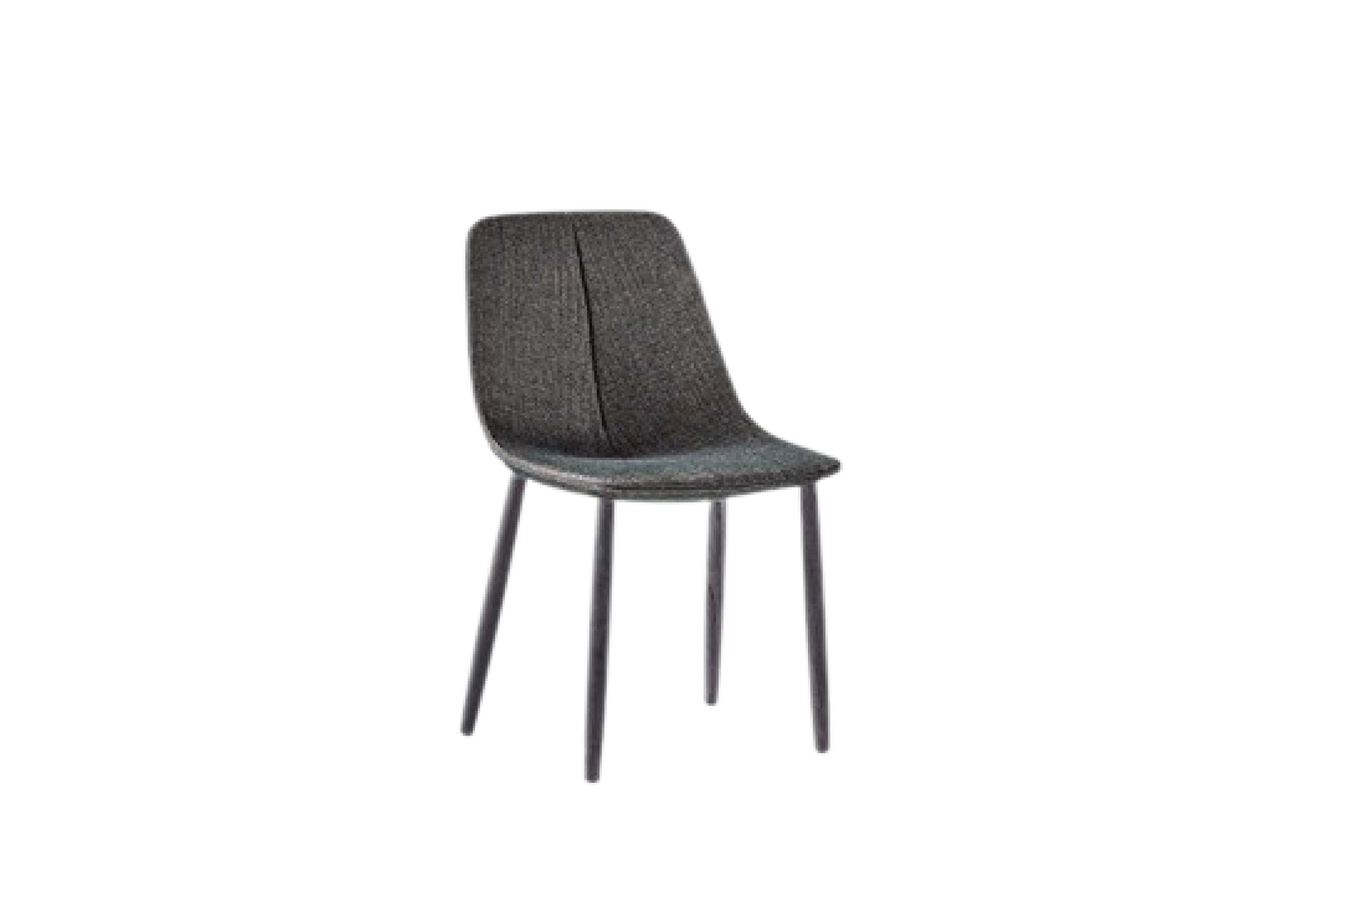 Bonaldo Chair By By Met 01